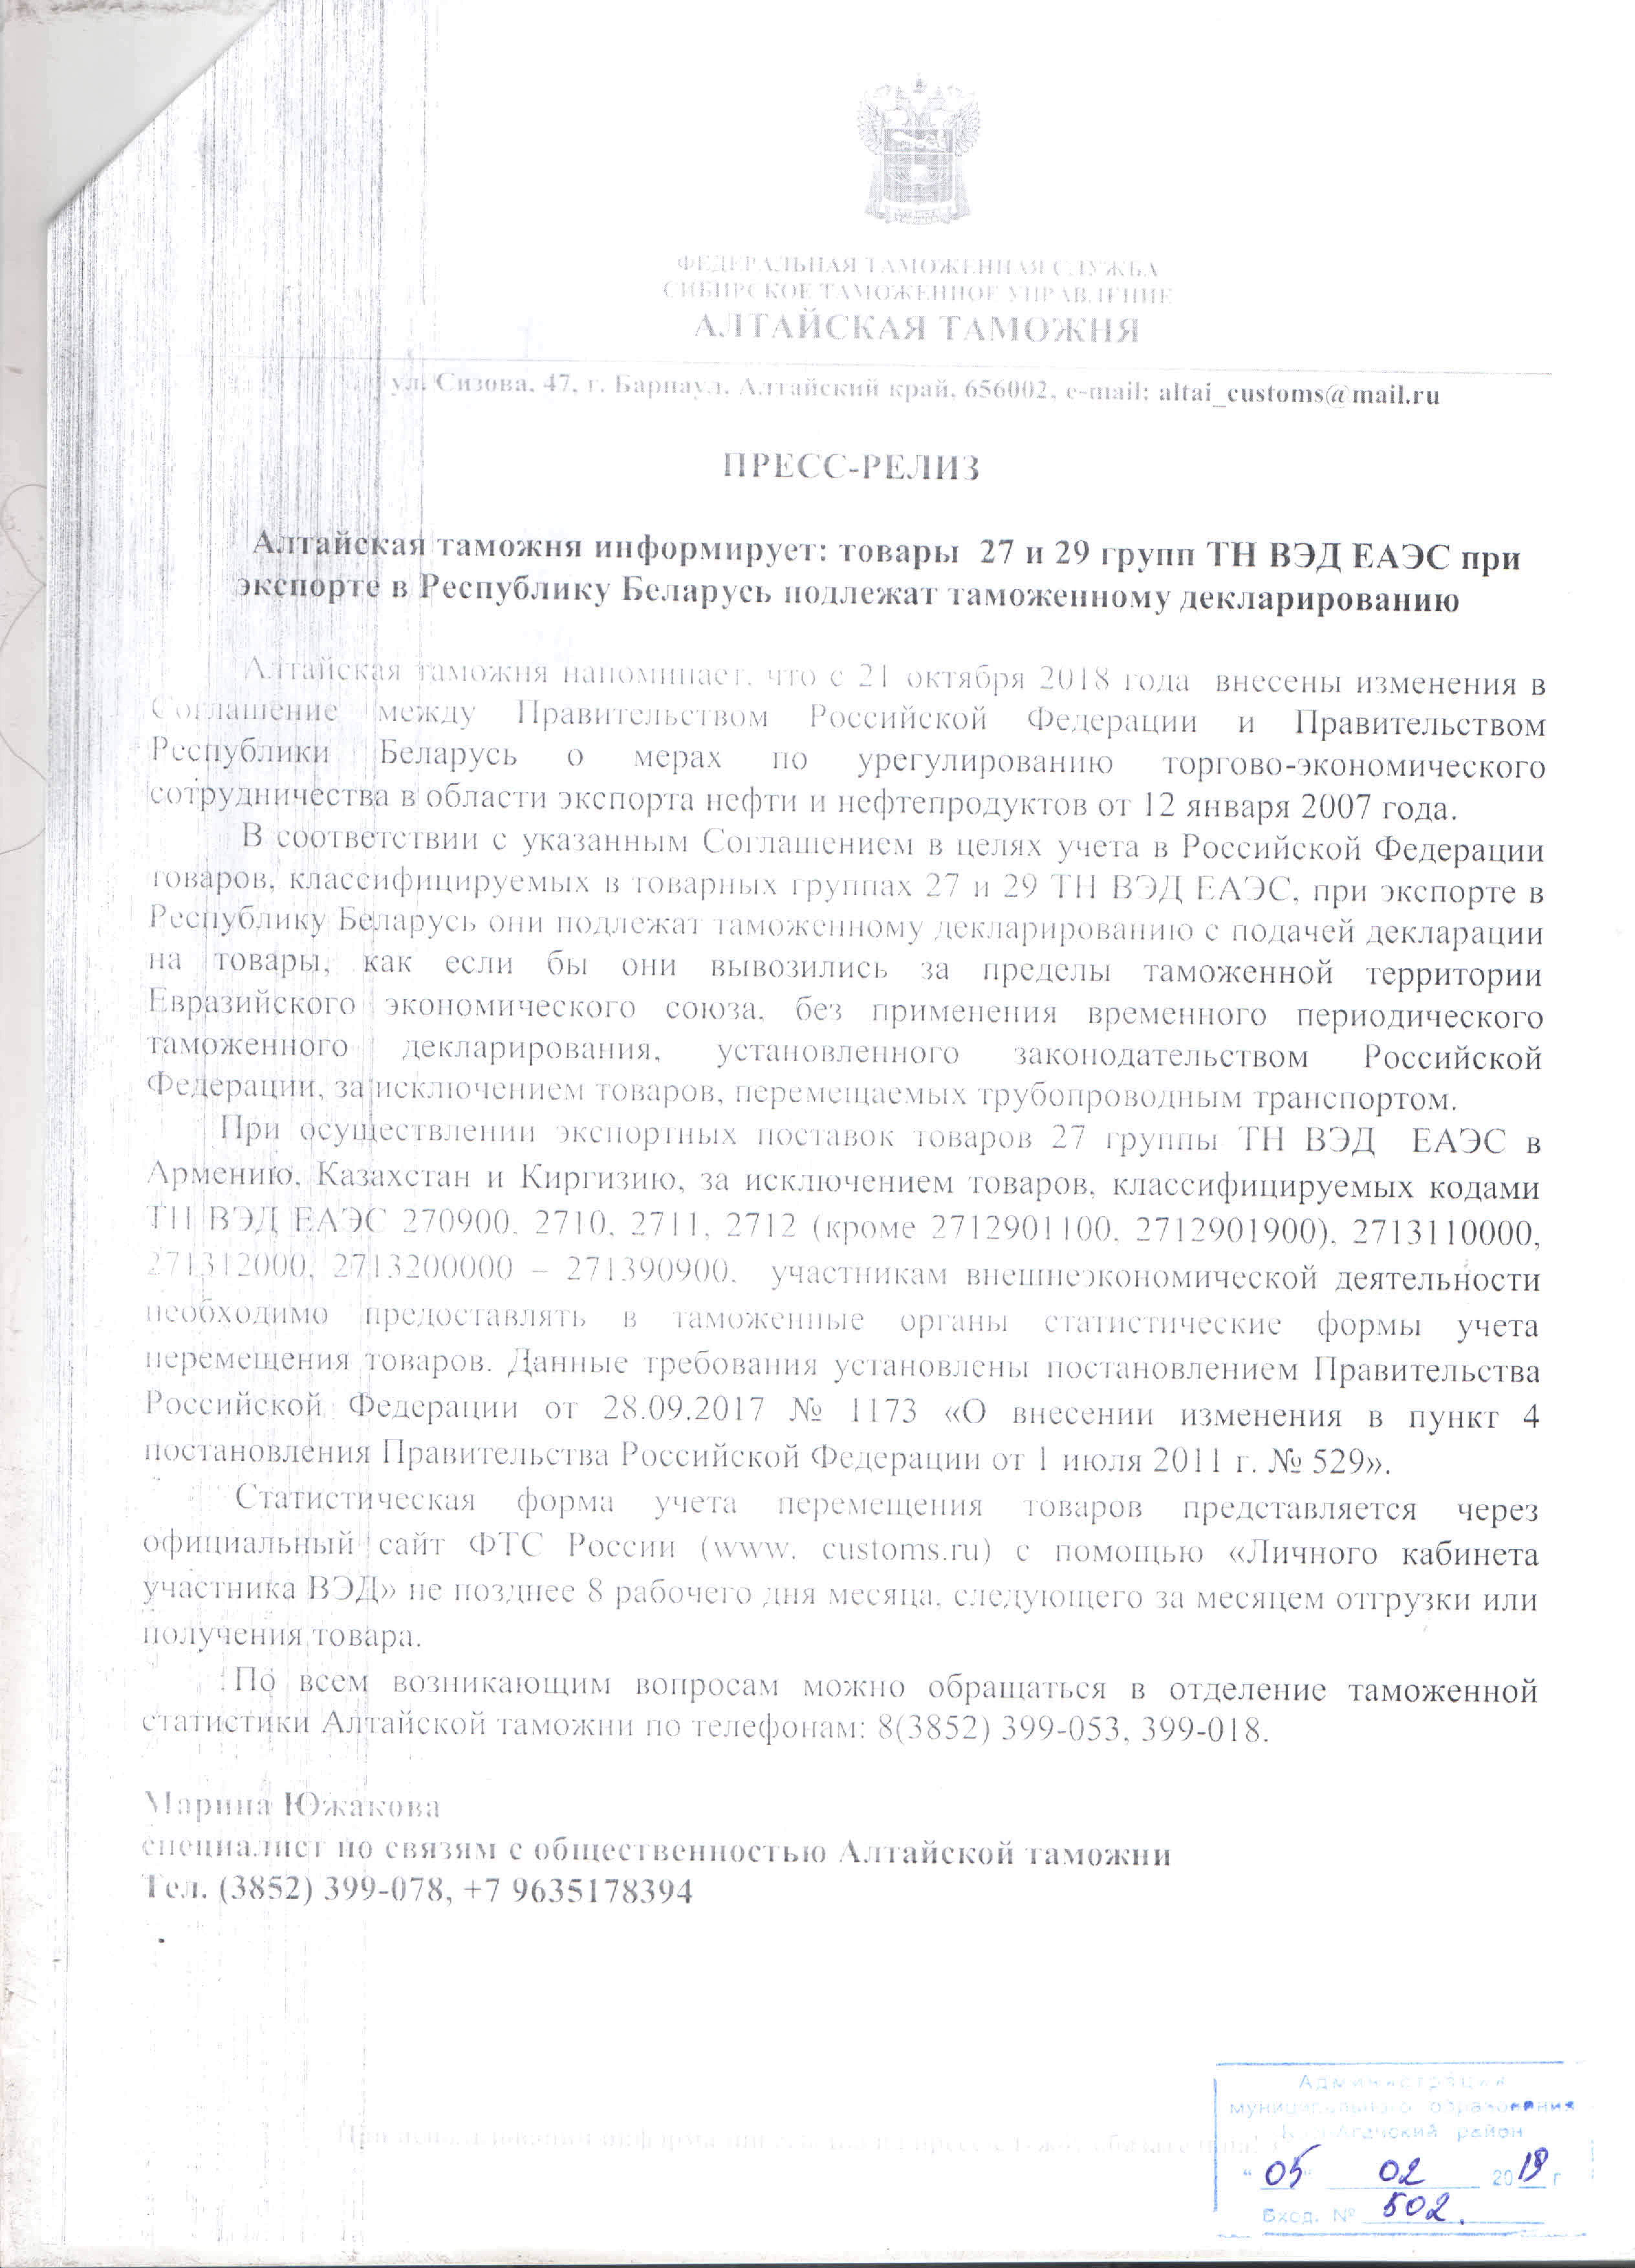 Алтайская таможня информирует: товары 27 и 29 групп ТНВЭД ЕАЭС при экспорте в Республику Беларусь подлежат таможенному декларированию 